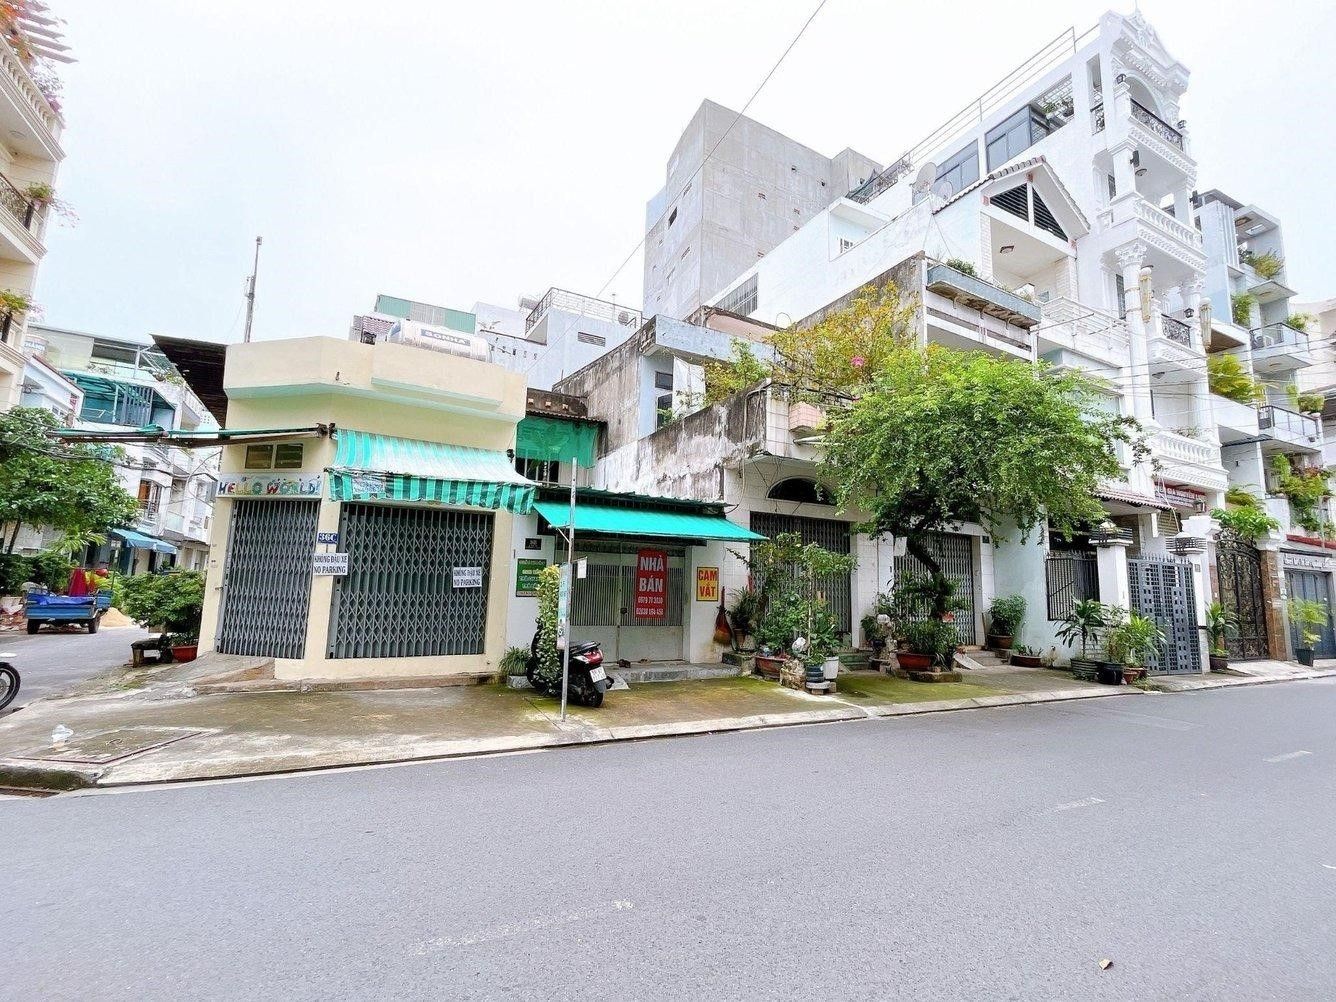 Giá bán nhà riêng, nguyên căn đường Bình Long, quận Tân Phú hiện tại là bao nhiêu?